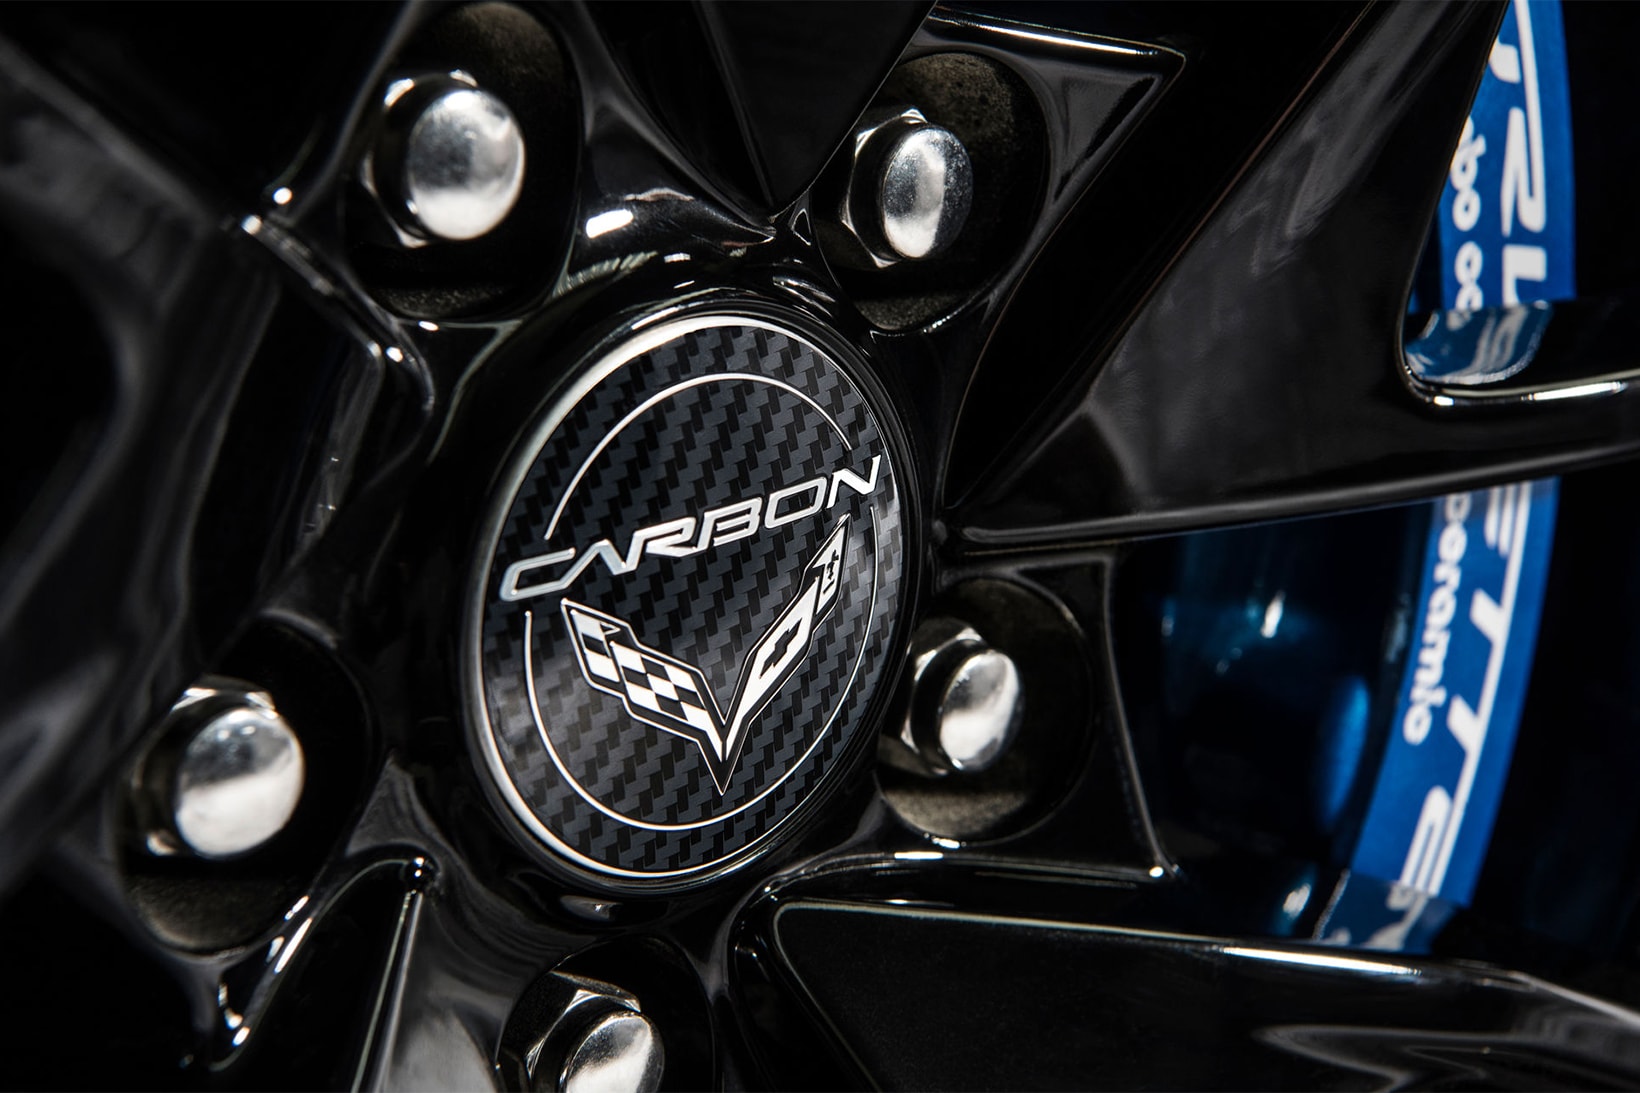 2018 C7 Corvette Carbon 65 Grand Sport Z06